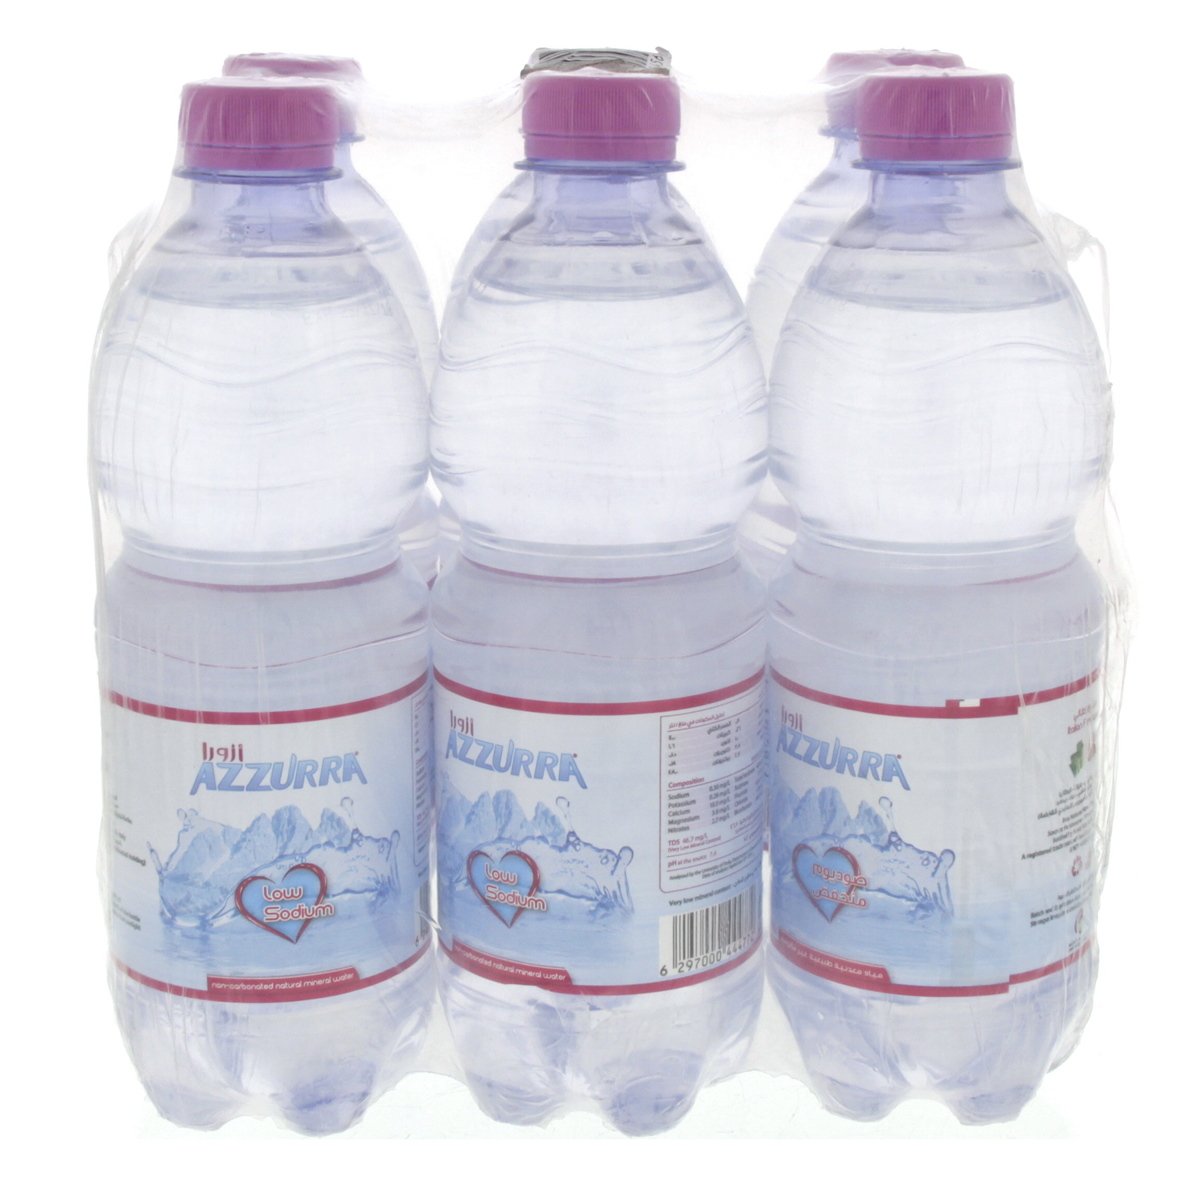 Azzurra Mineral Water Low Sodium 6 x 500 ml